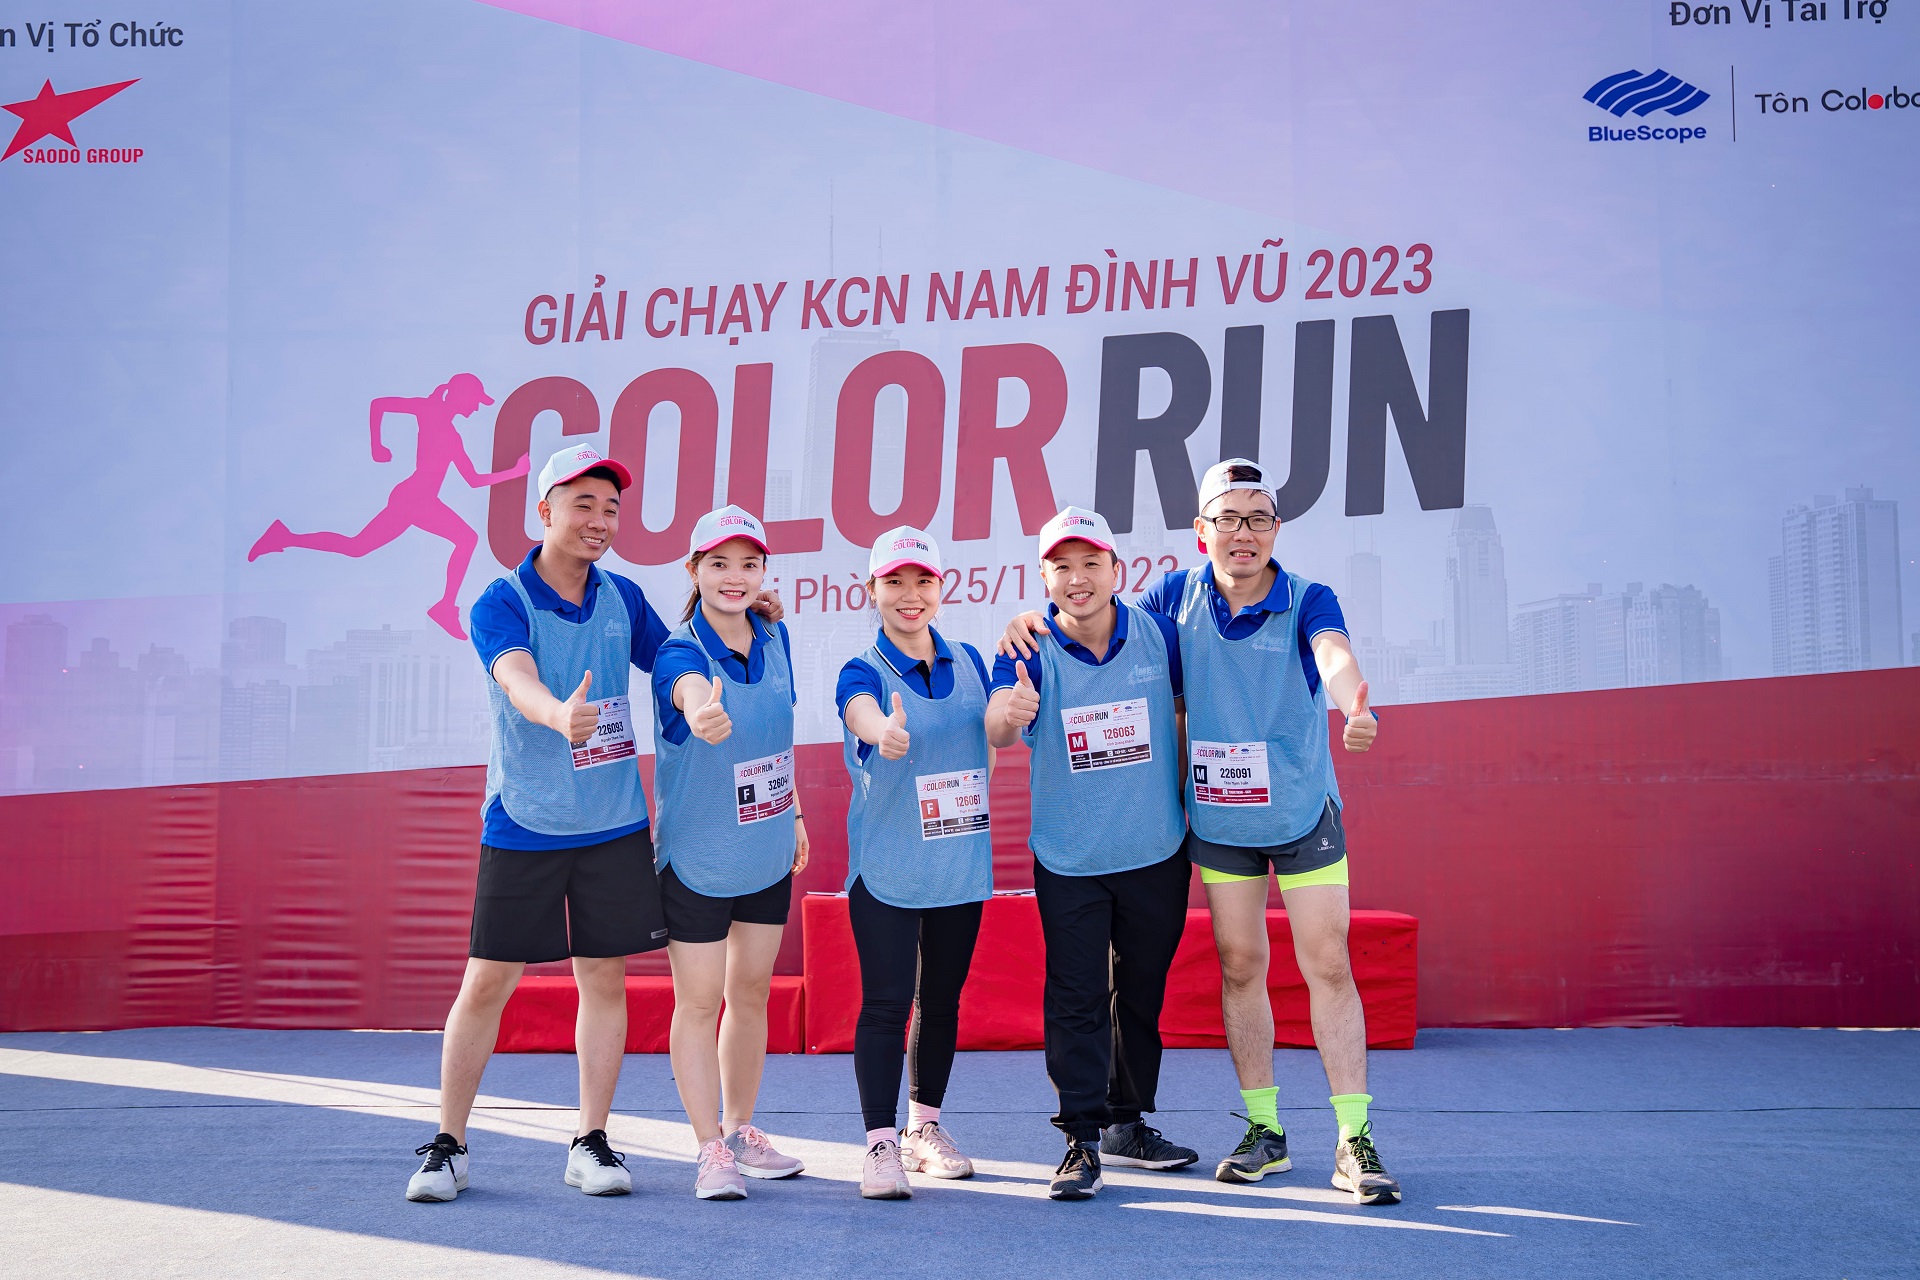 Amecc góp mặt tại sự kiện Color Run 2023 - Khám phá năng lực và giao lưu tại KCN Nam Đình Vũ